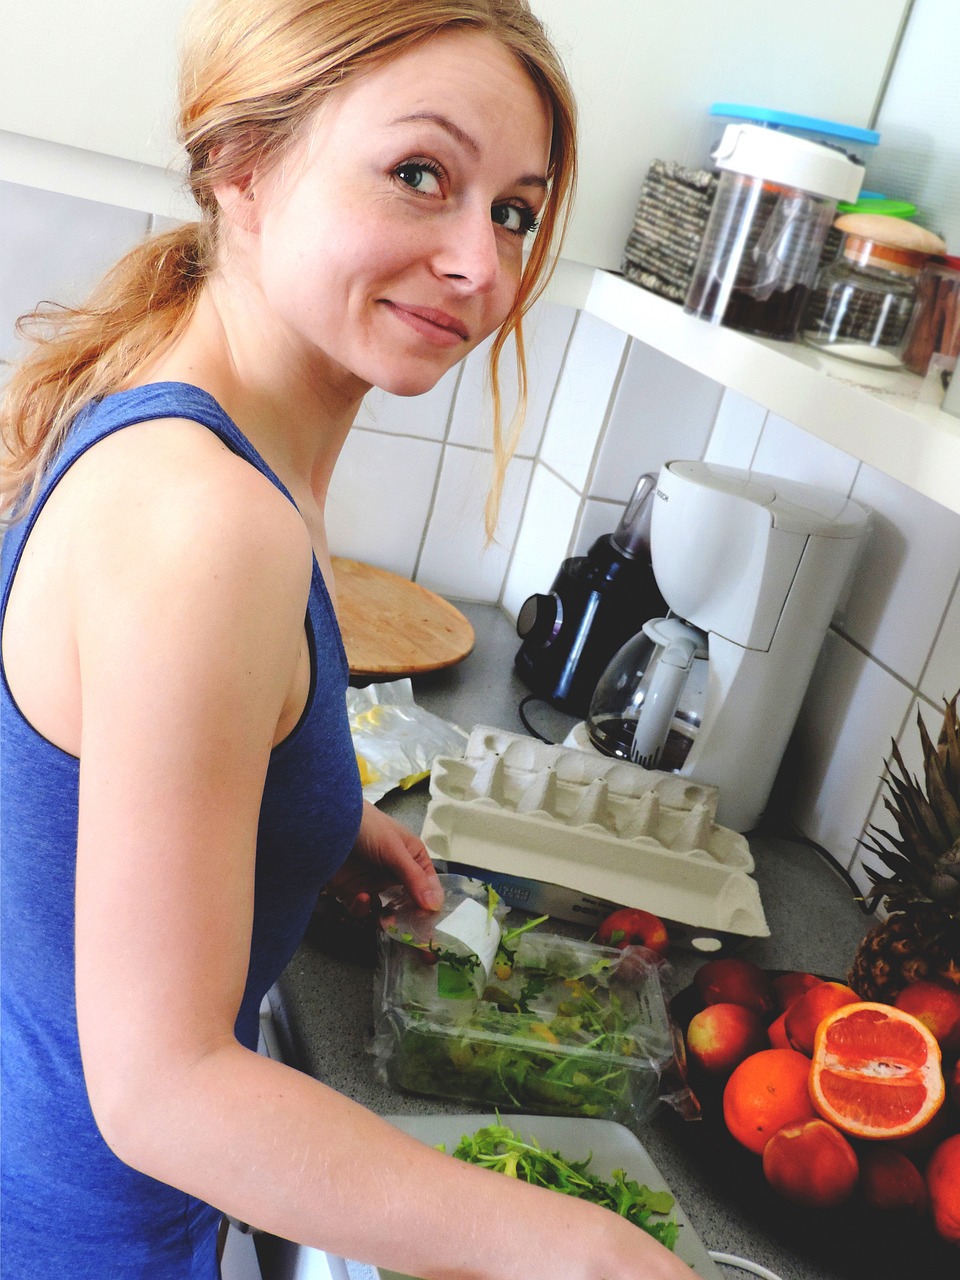 Mujer sonriendo en la cocina | Fuente: Pixabay